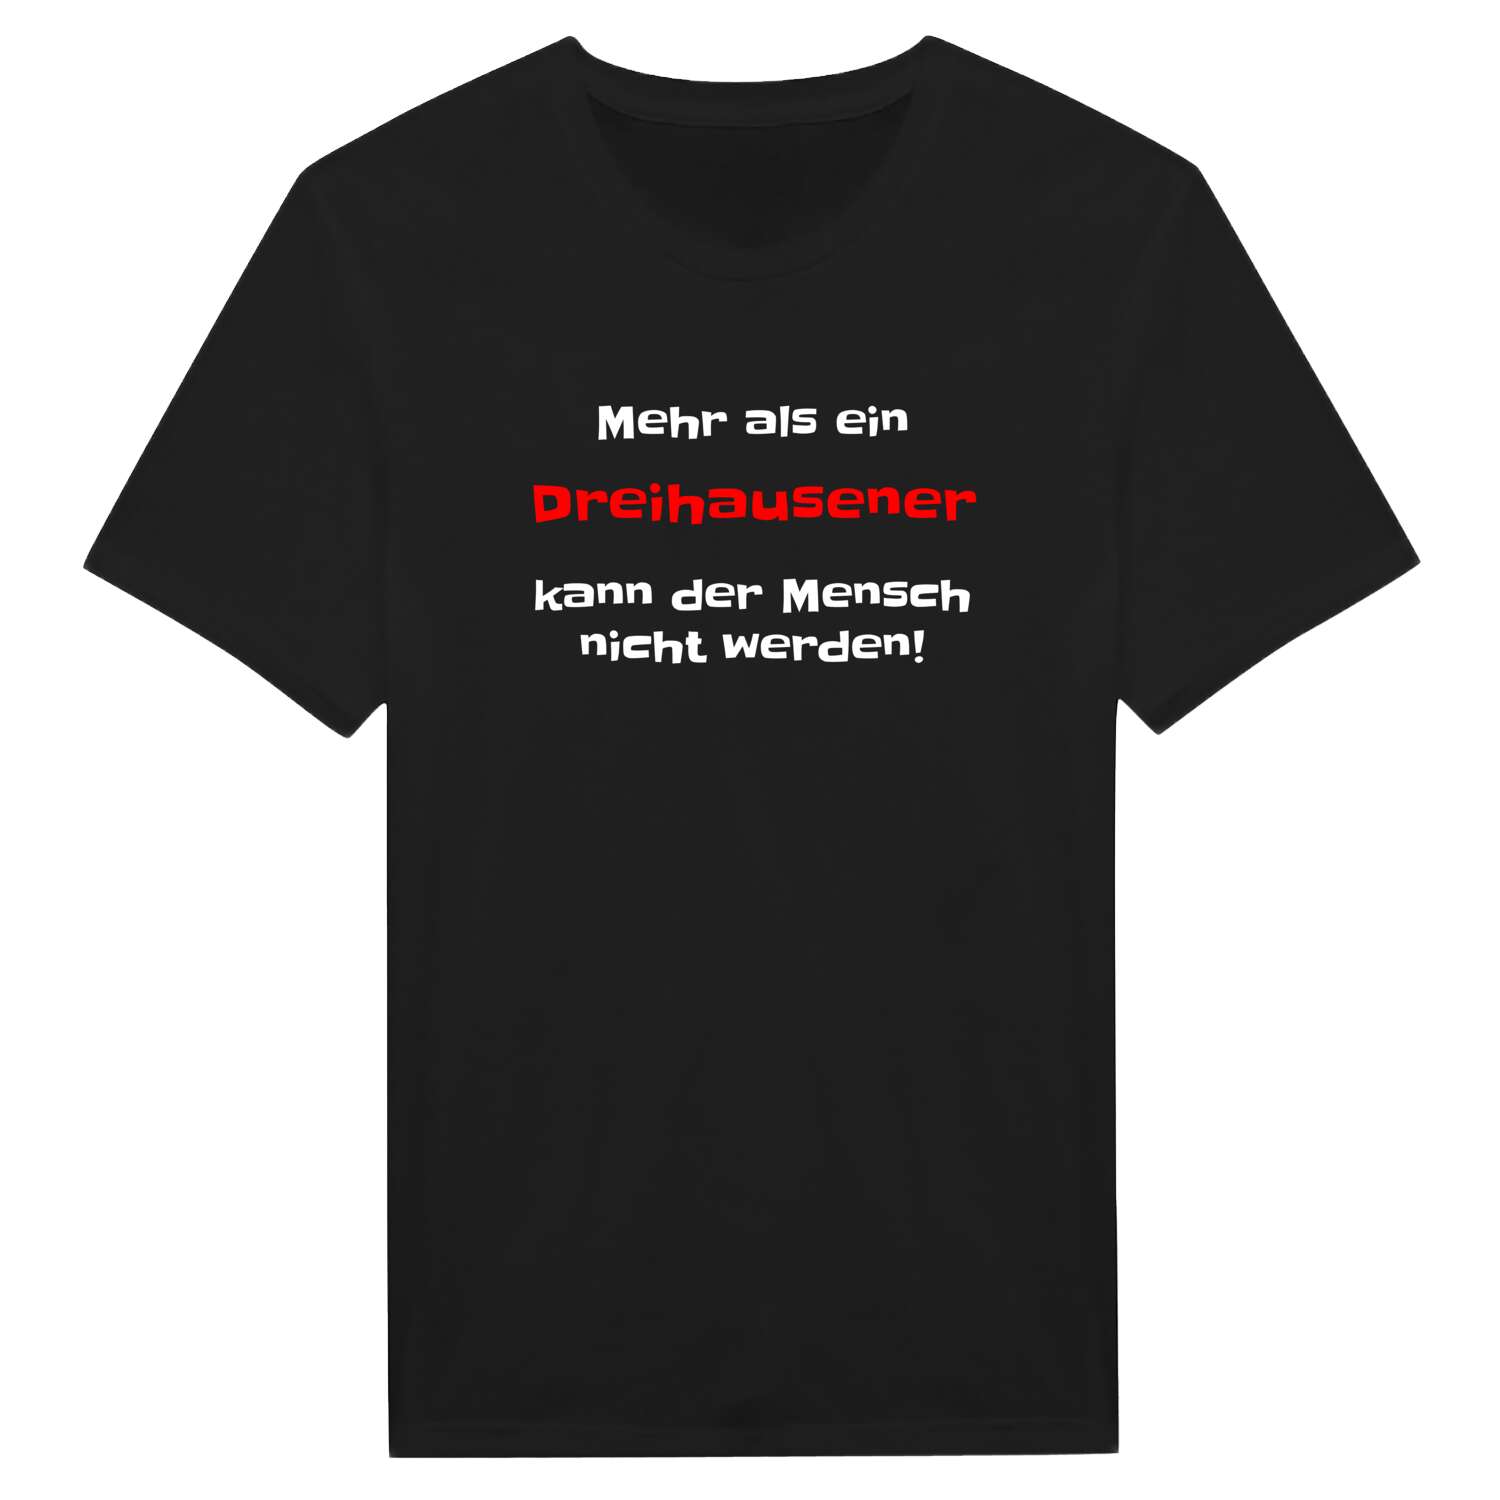 Dreihausen T-Shirt »Mehr als ein«